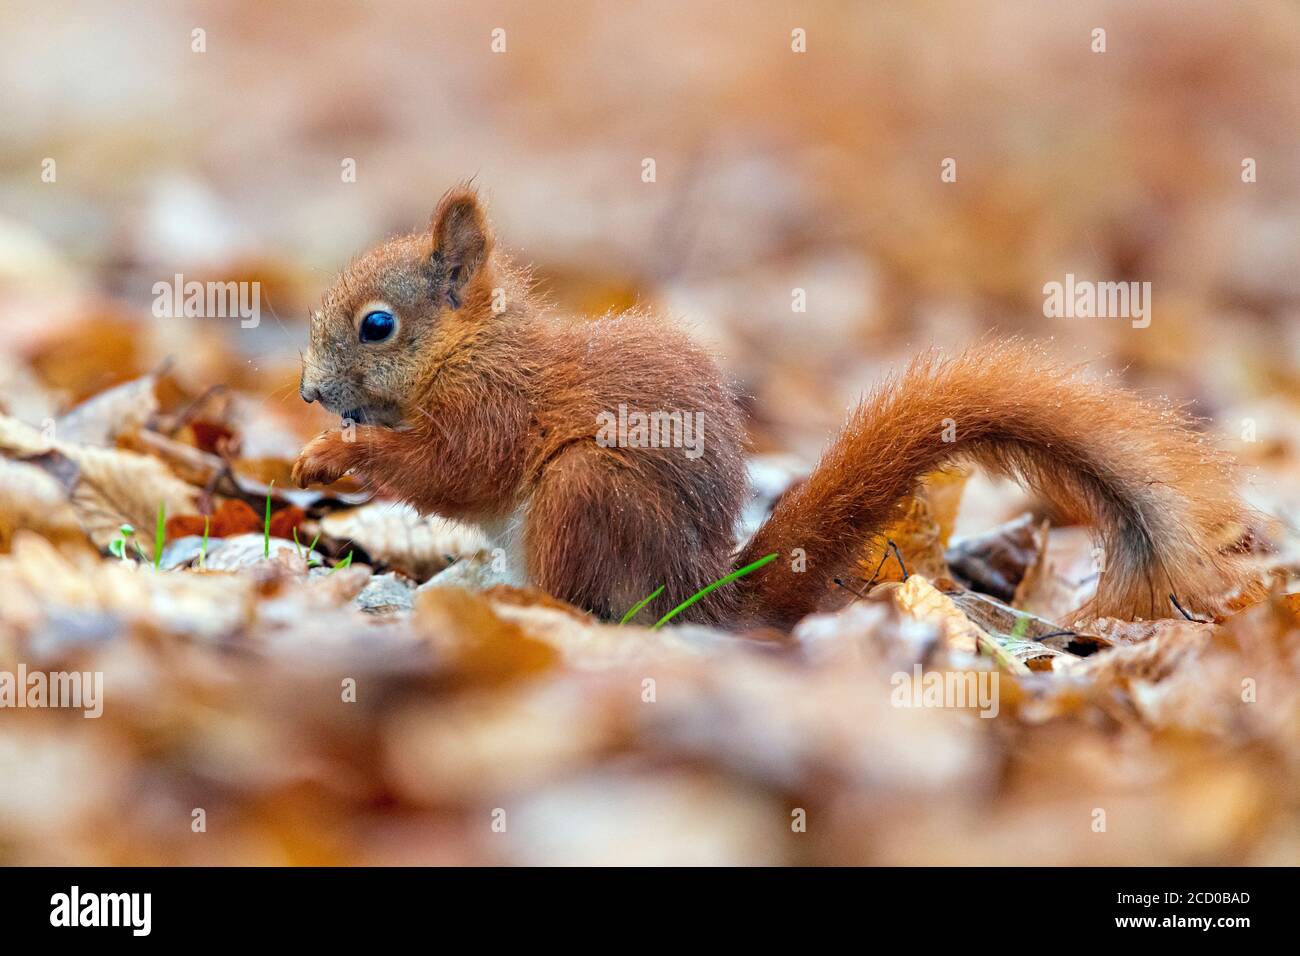 Eichhörnchen (Sciurus vulgaris), Seitenansicht eines Jugendlichen essen Samen auf den Boden, Masowien, Polen Stockfoto